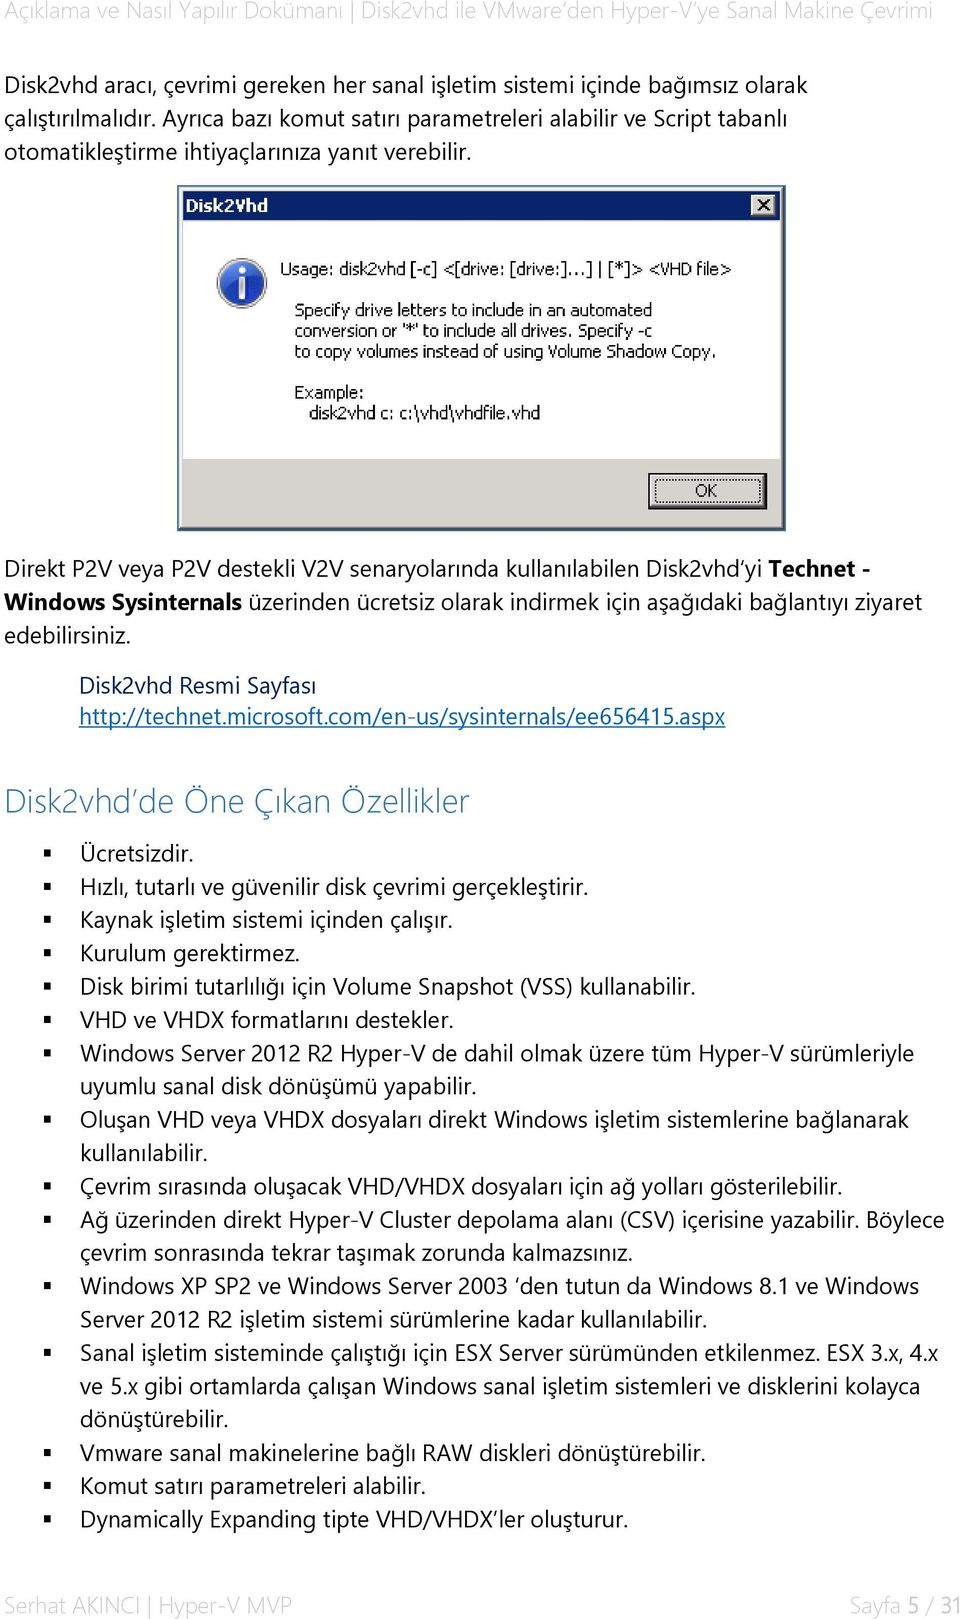 Direkt P2V veya P2V destekli V2V senaryolarında kullanılabilen Disk2vhd yi Technet - Windows Sysinternals üzerinden ücretsiz olarak indirmek için aşağıdaki bağlantıyı ziyaret edebilirsiniz.